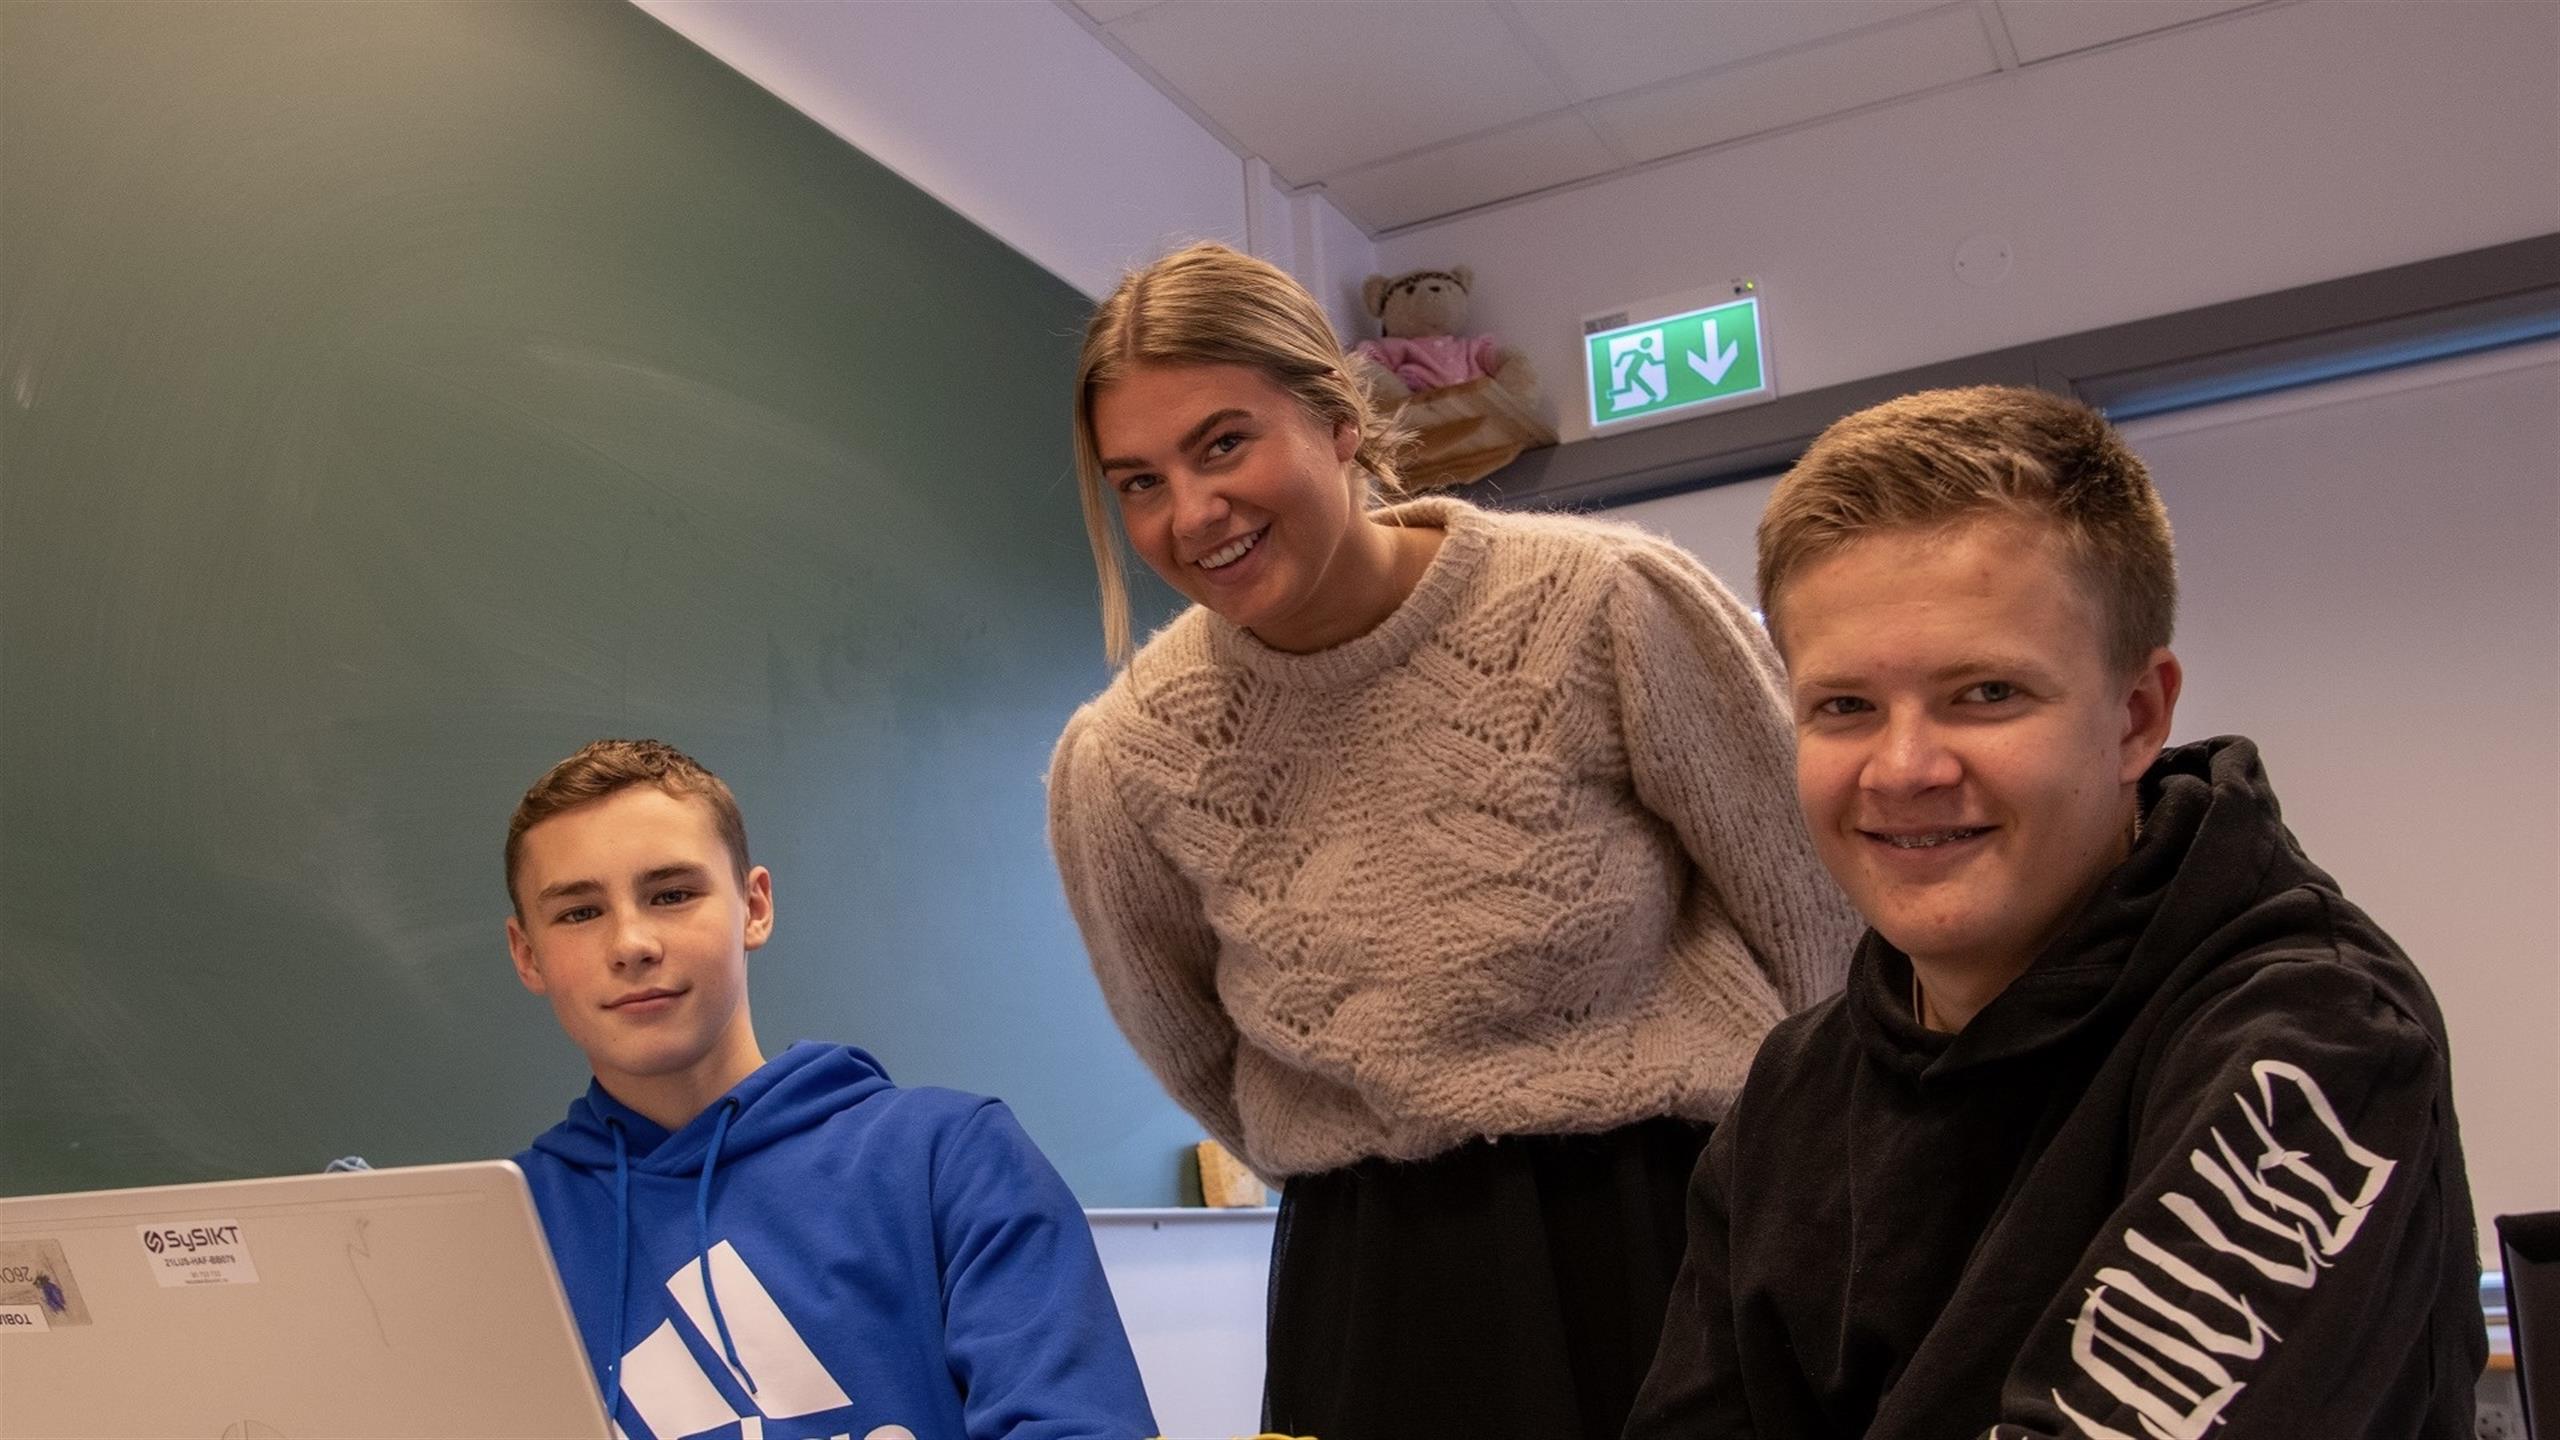 Tre smilende studenter avbildet i et klasserom.